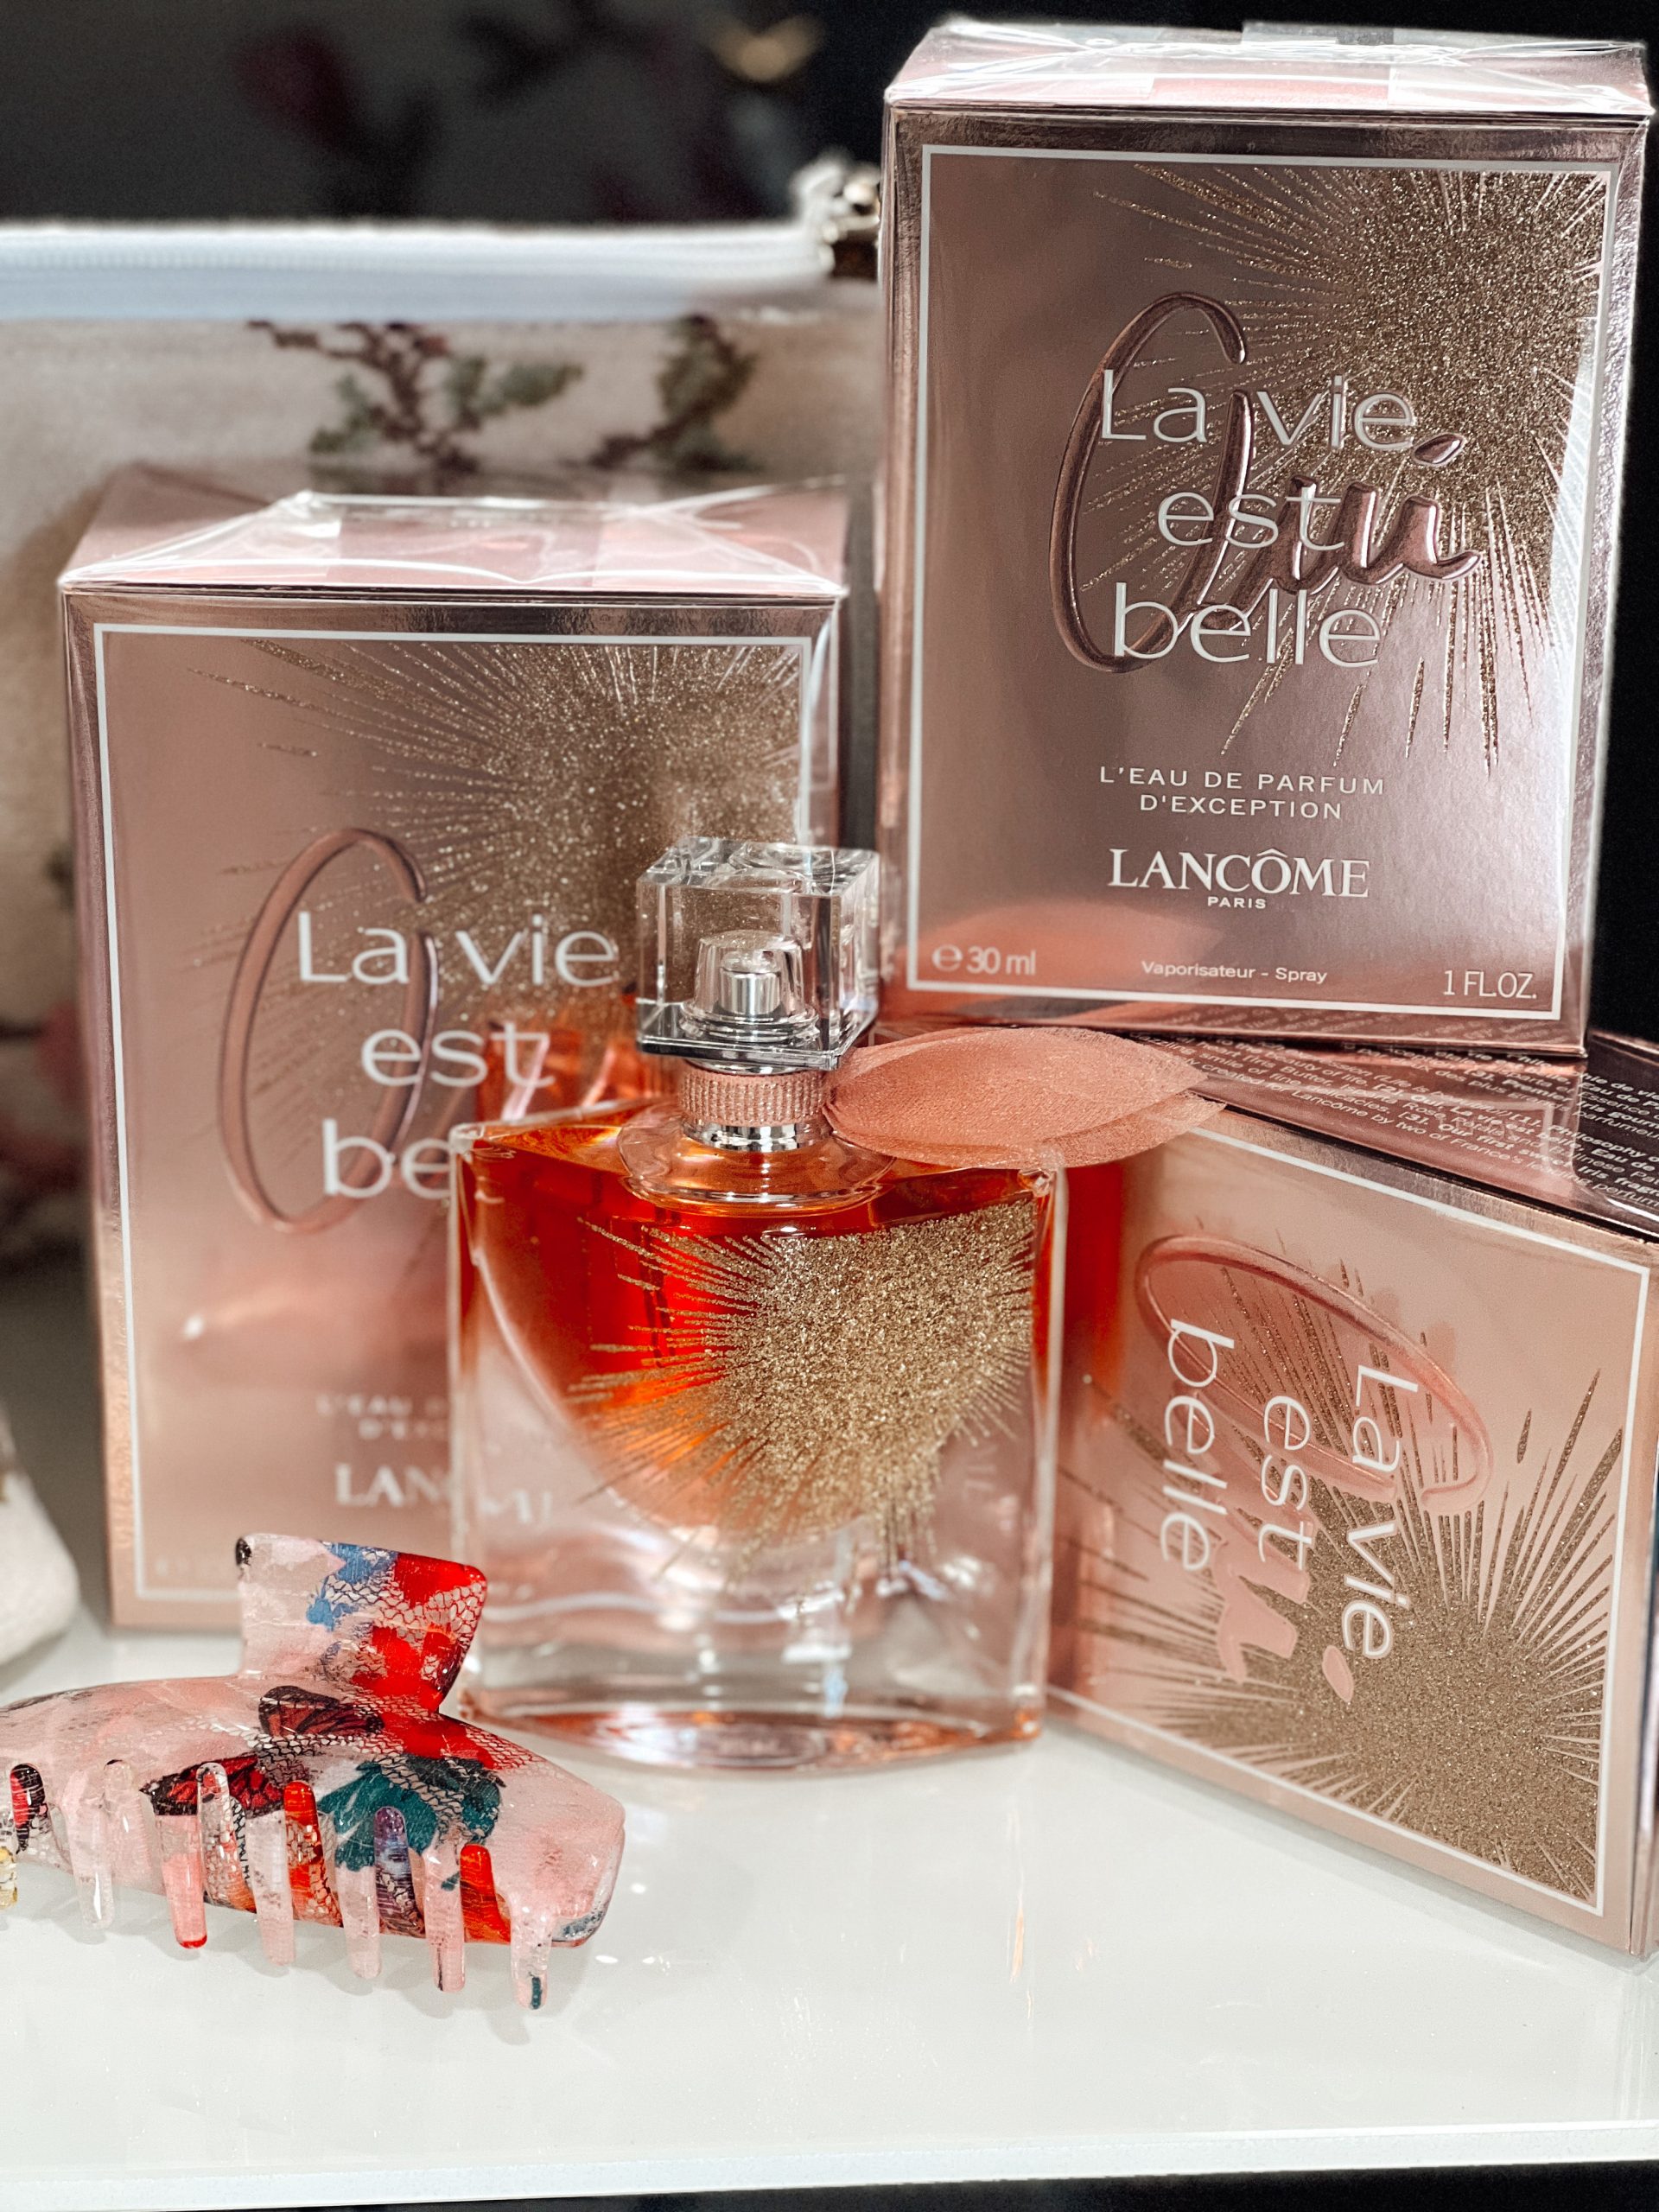 La vie est belle Parfum von Lancome in verschiednenen Größen und eine dazu passende Haarklammer bei Parfümerie Dr. Ebner